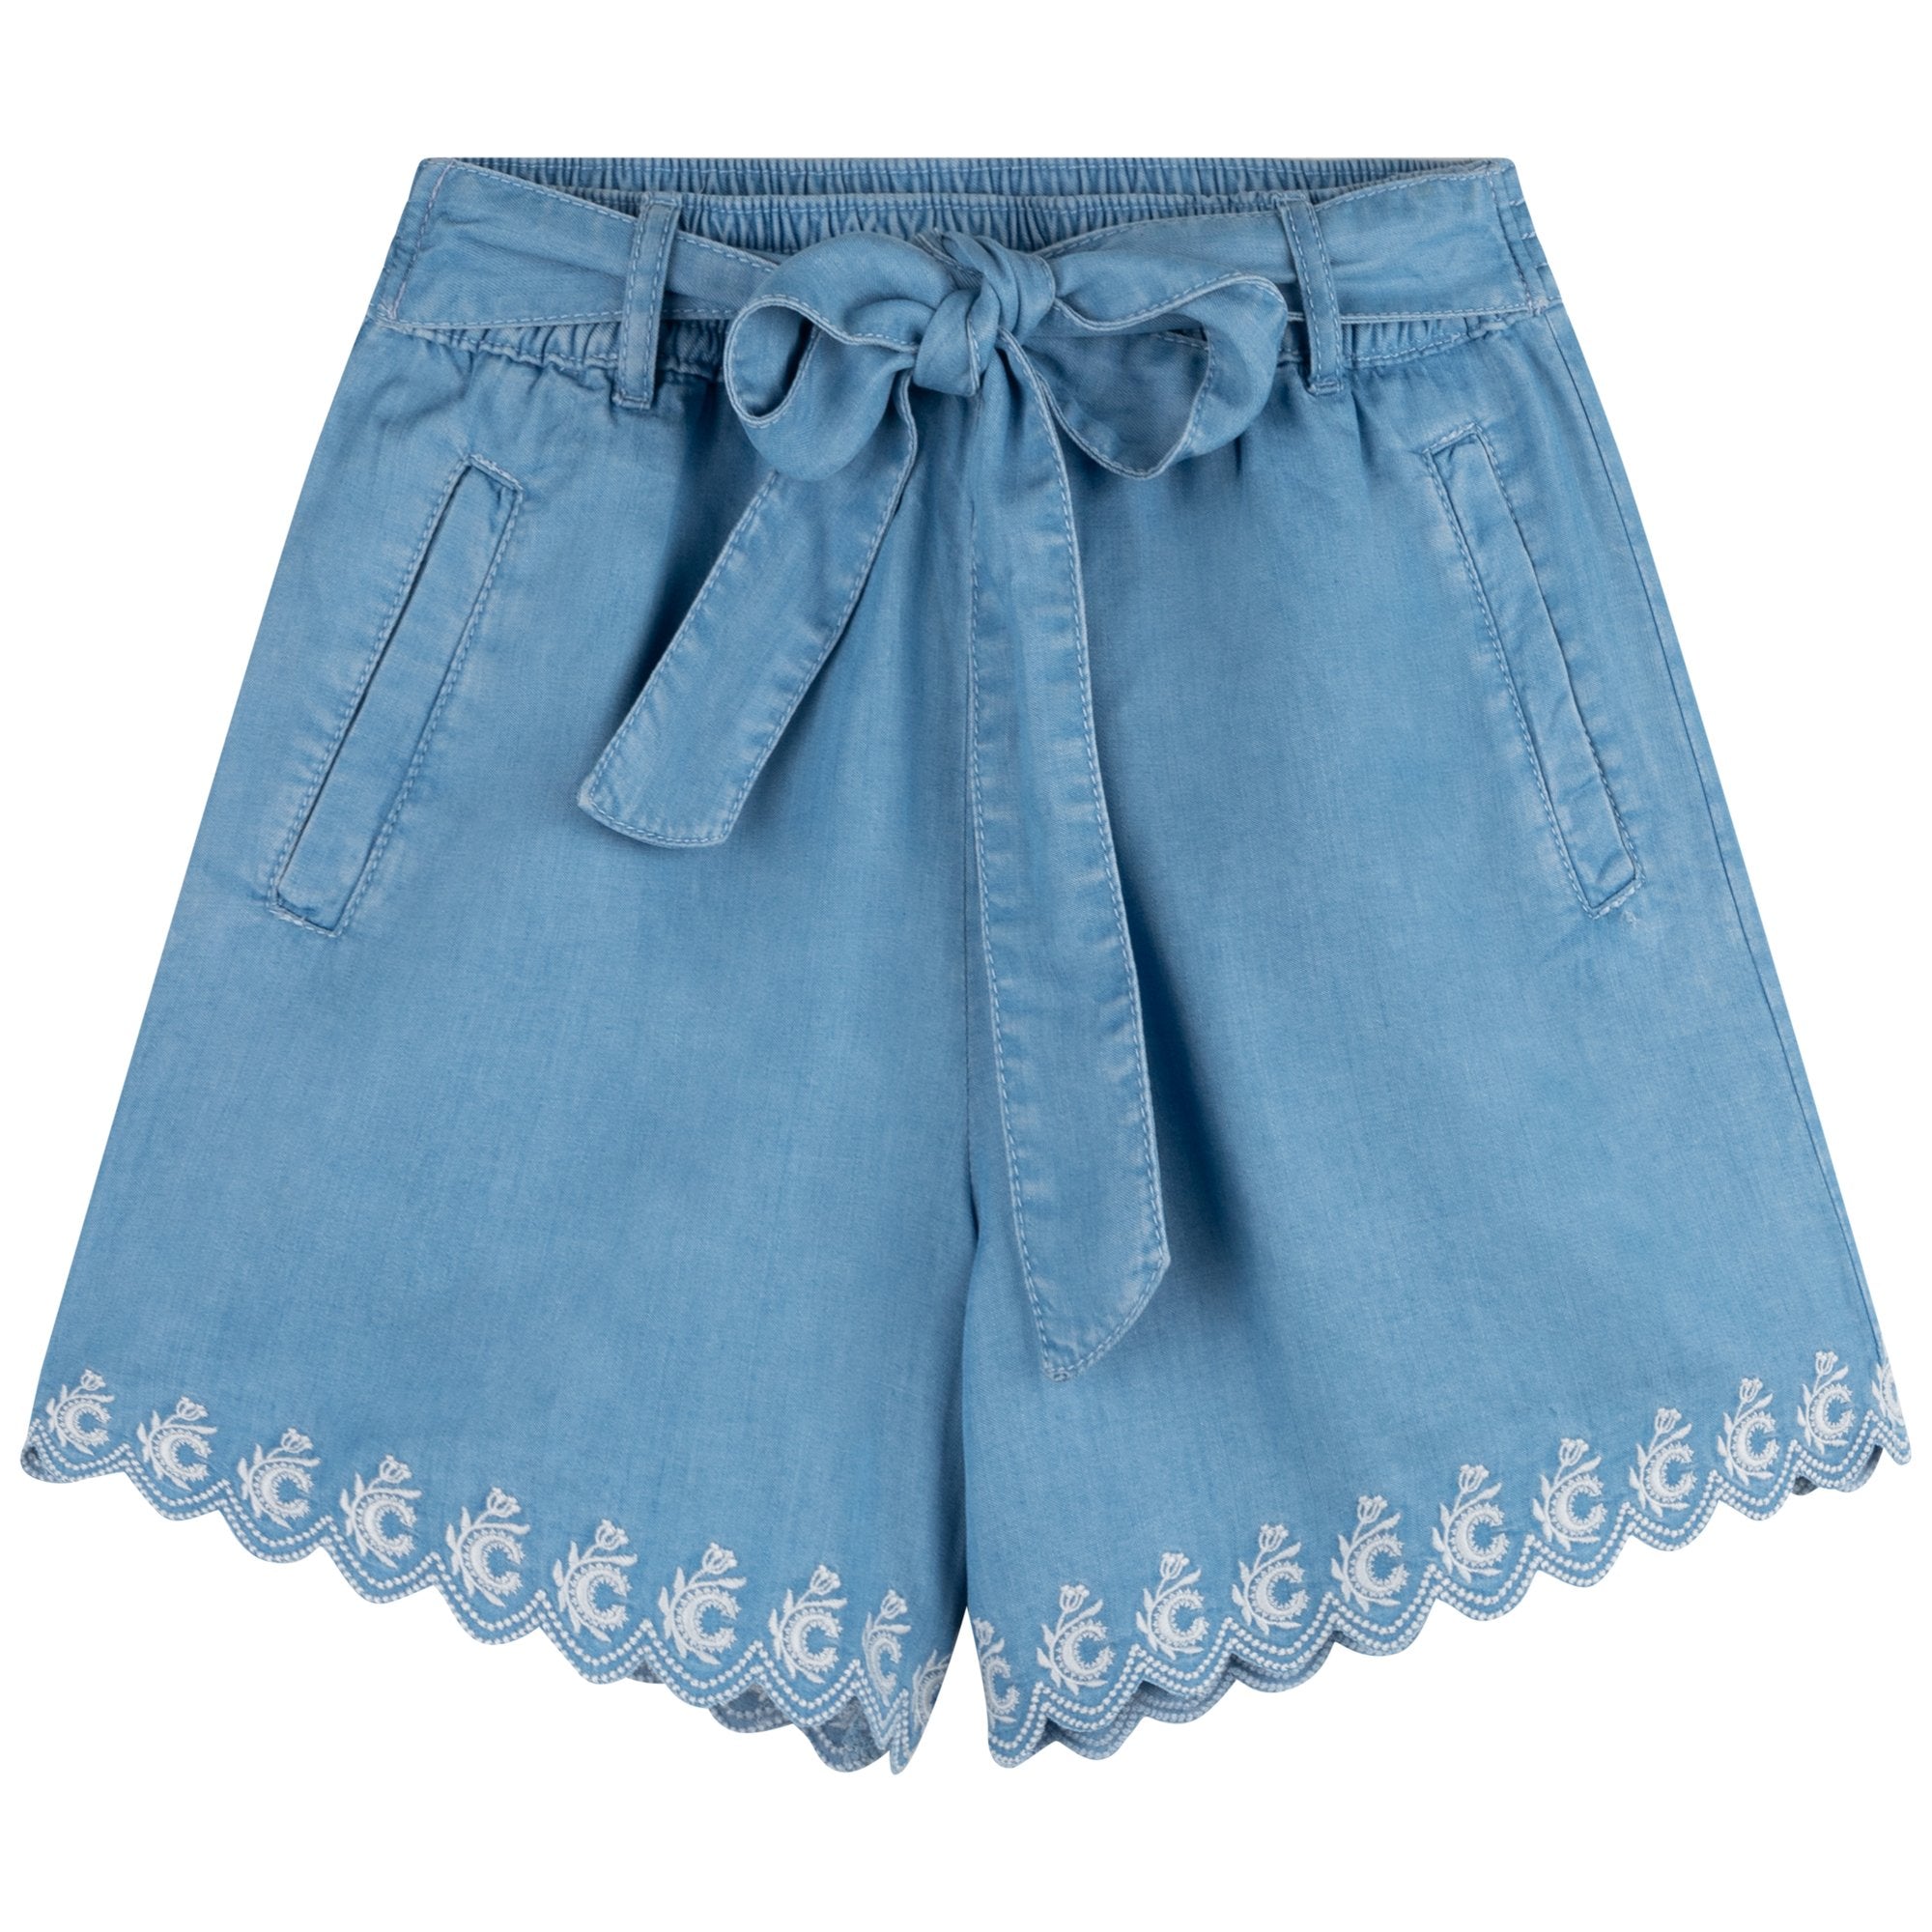 Chloe Girls Blue Shorts